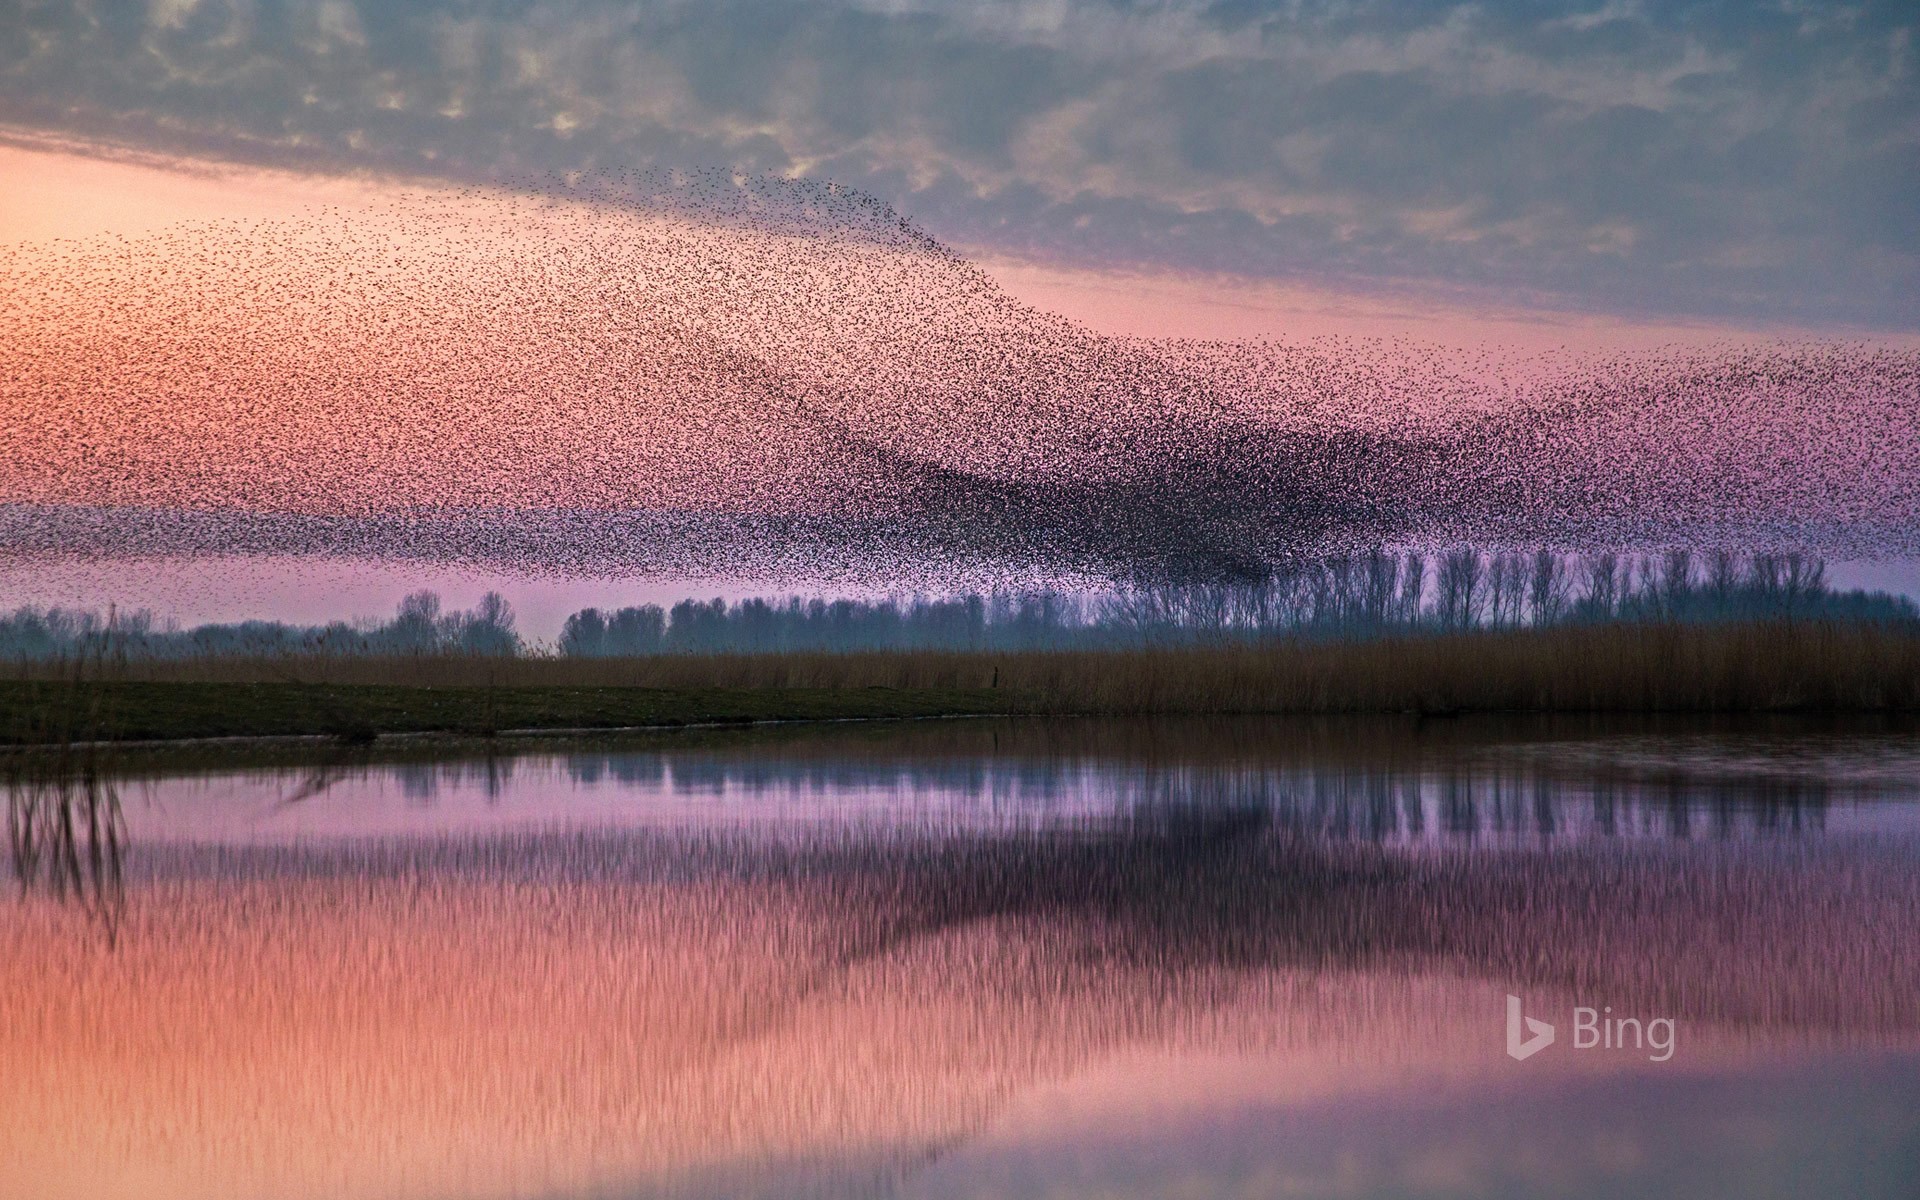 Starlings flock over Lauwersmeer National Park, Netherlands